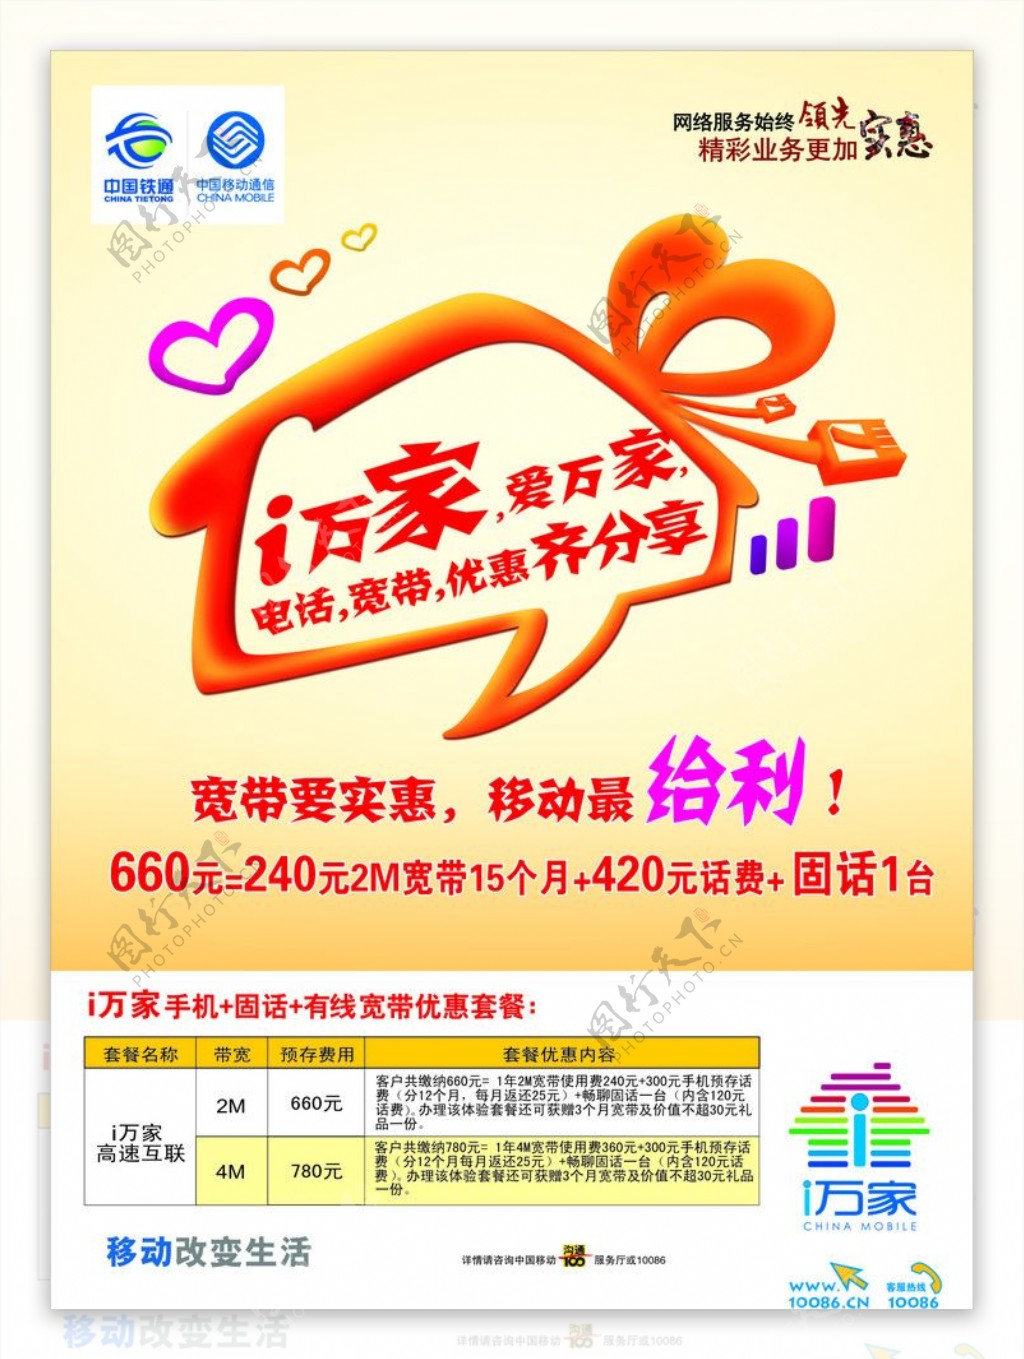 中国移动I万家家庭网促销宣传海报